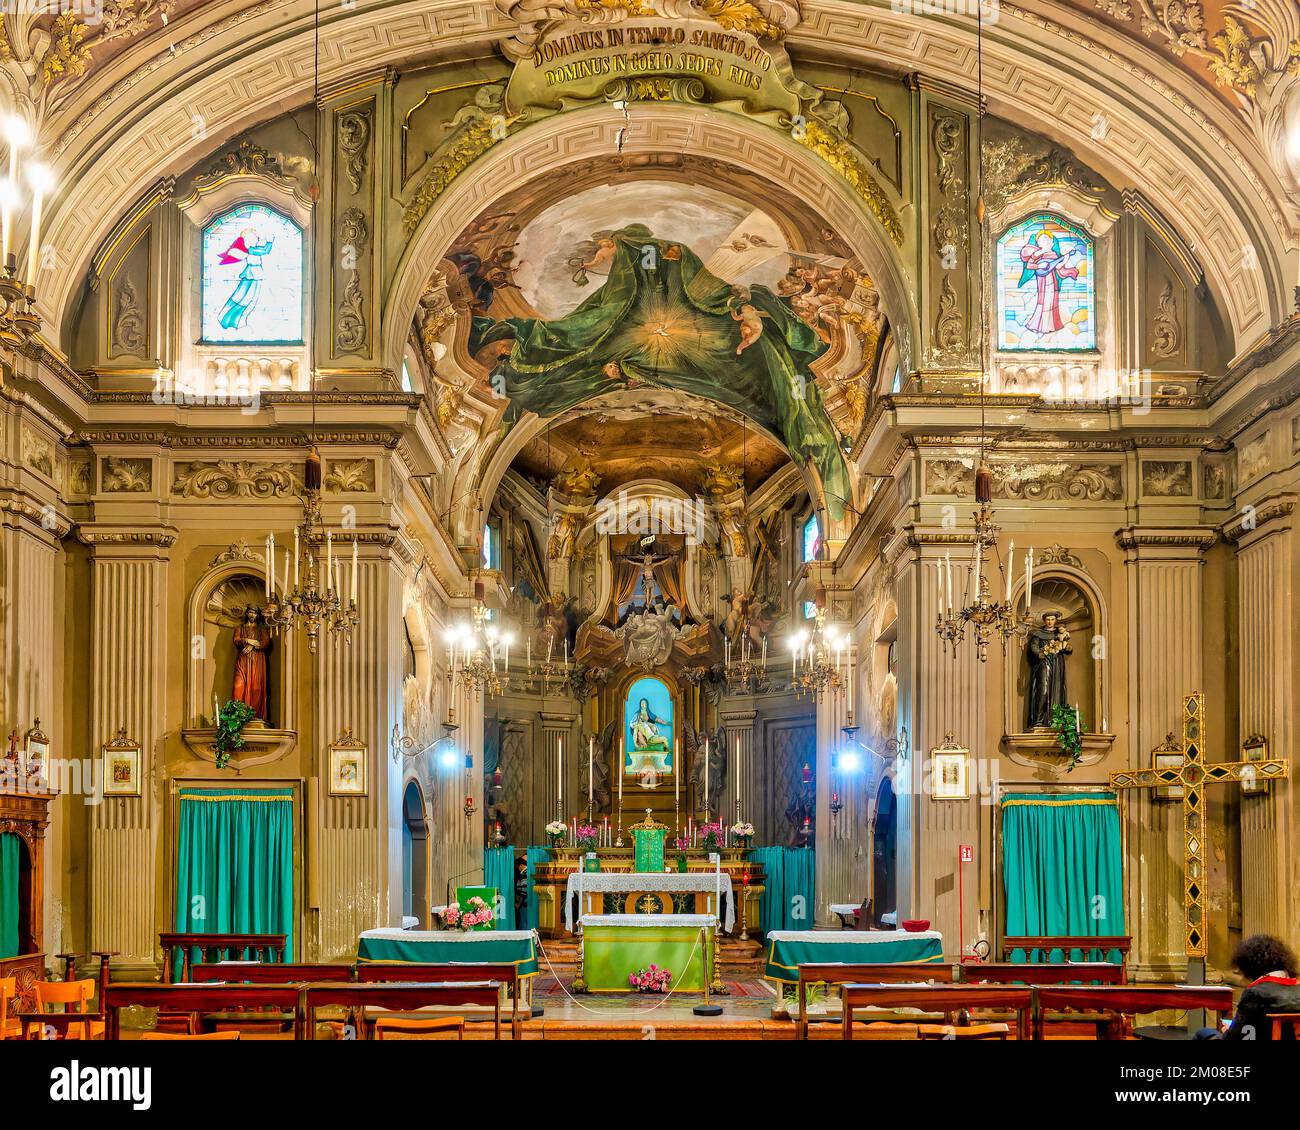 Interior of the Church of Santa Maria del Suffragio, Ferrara, Italy Stock Photo